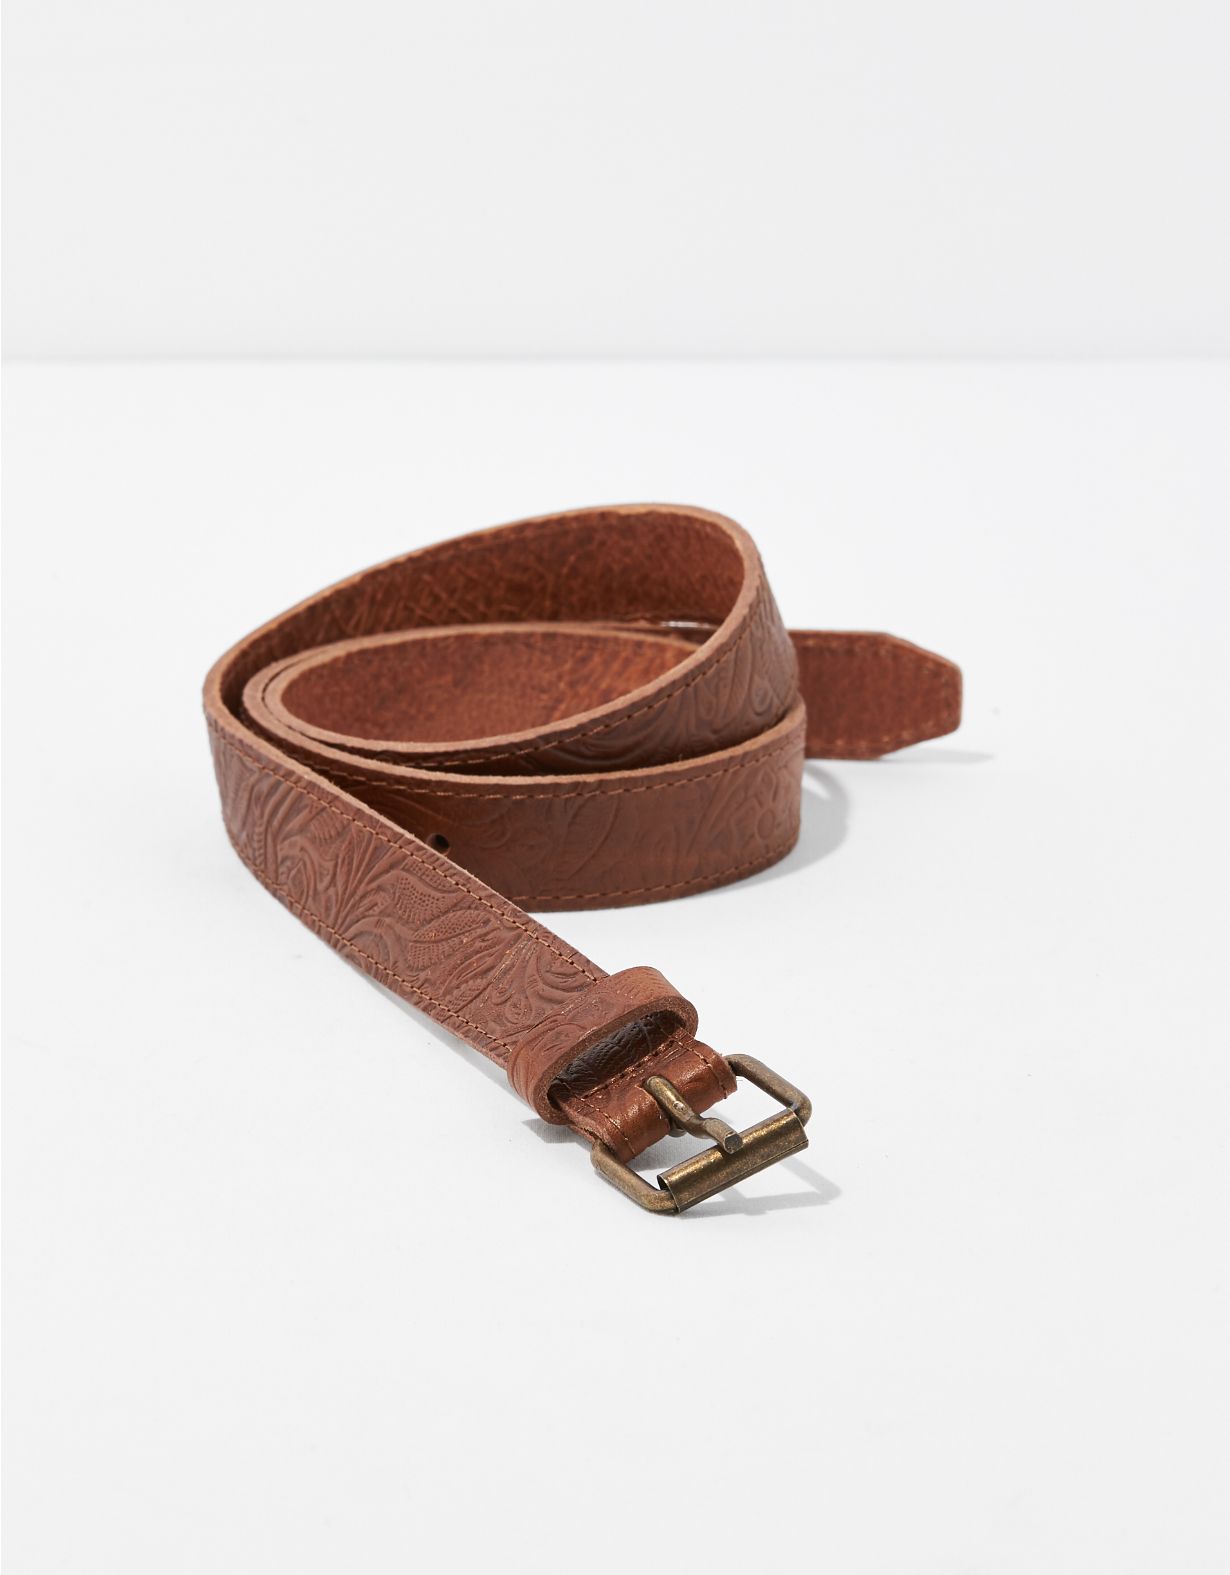 Frye & Co. Embellished Leather Belt